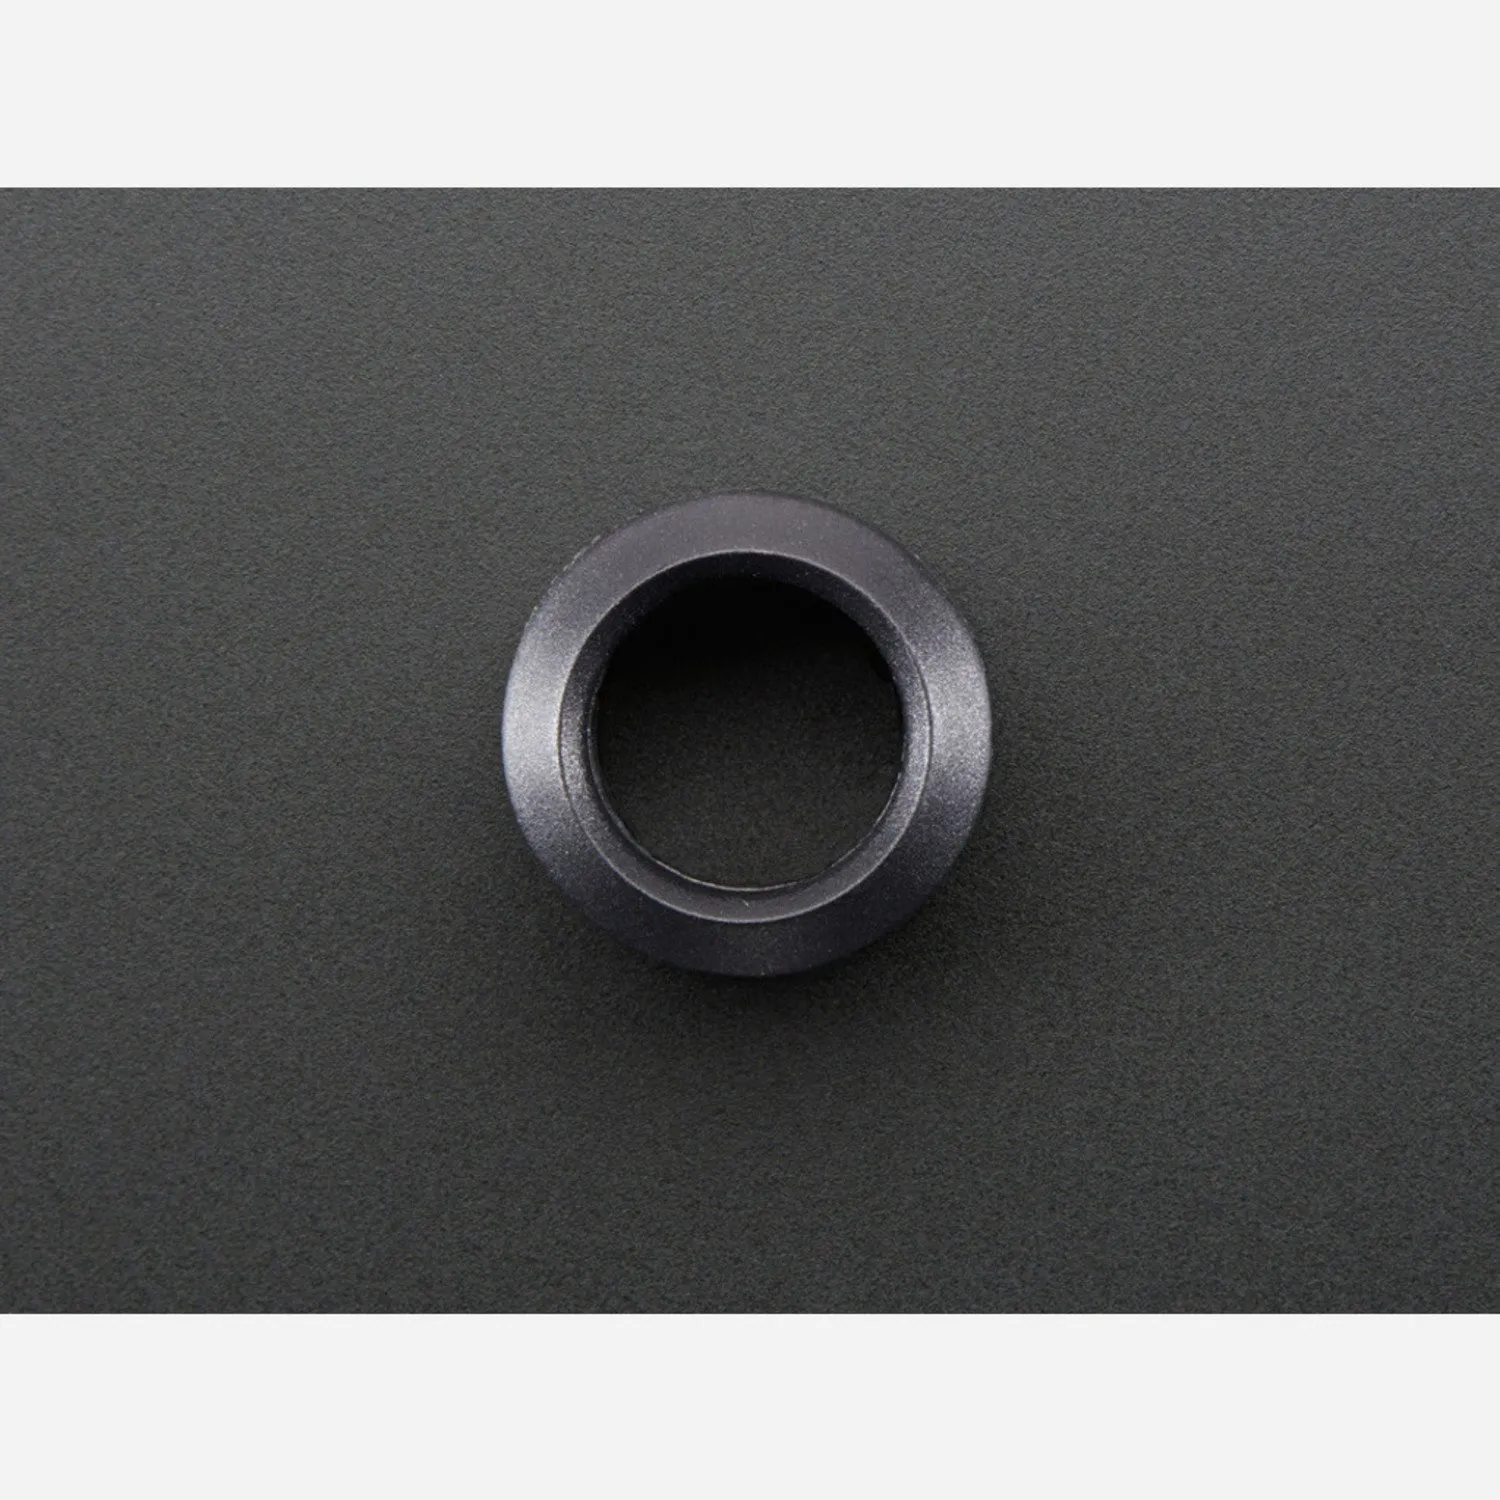 Photo of 10mm Plastic Bevel LED Holder - Pack of 5